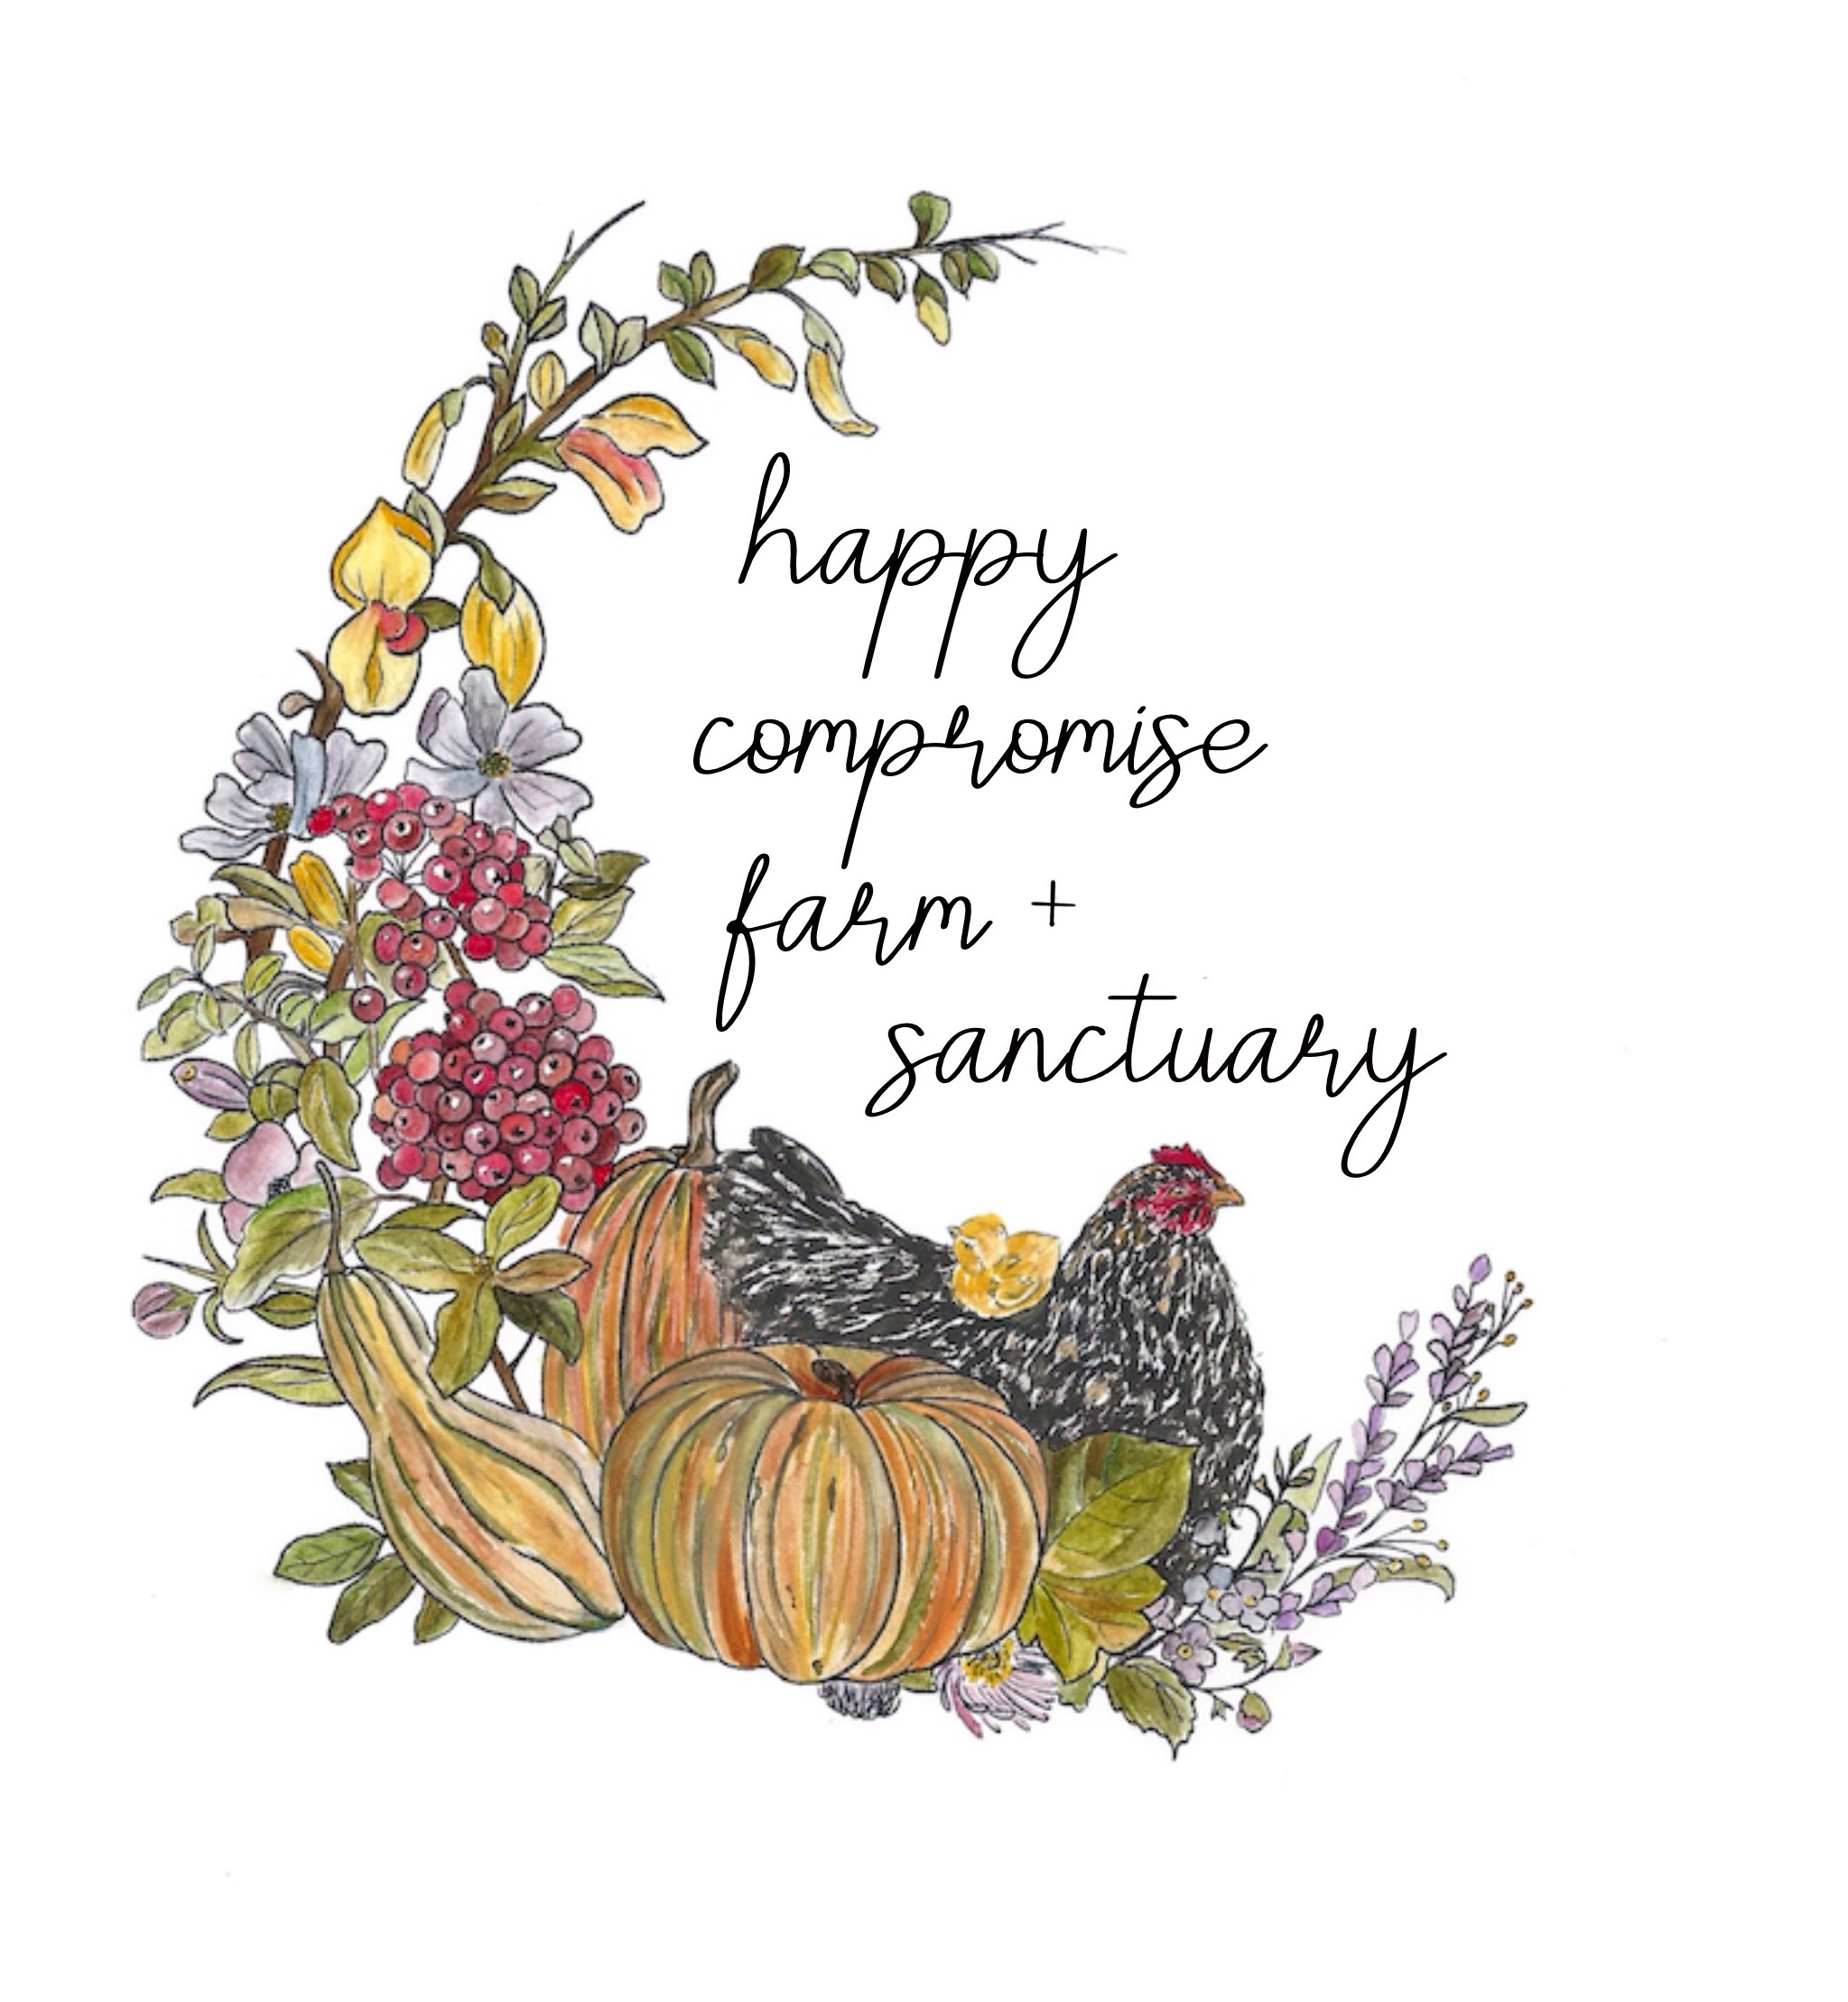 Happy Compromise Farm + Sanctuary logo